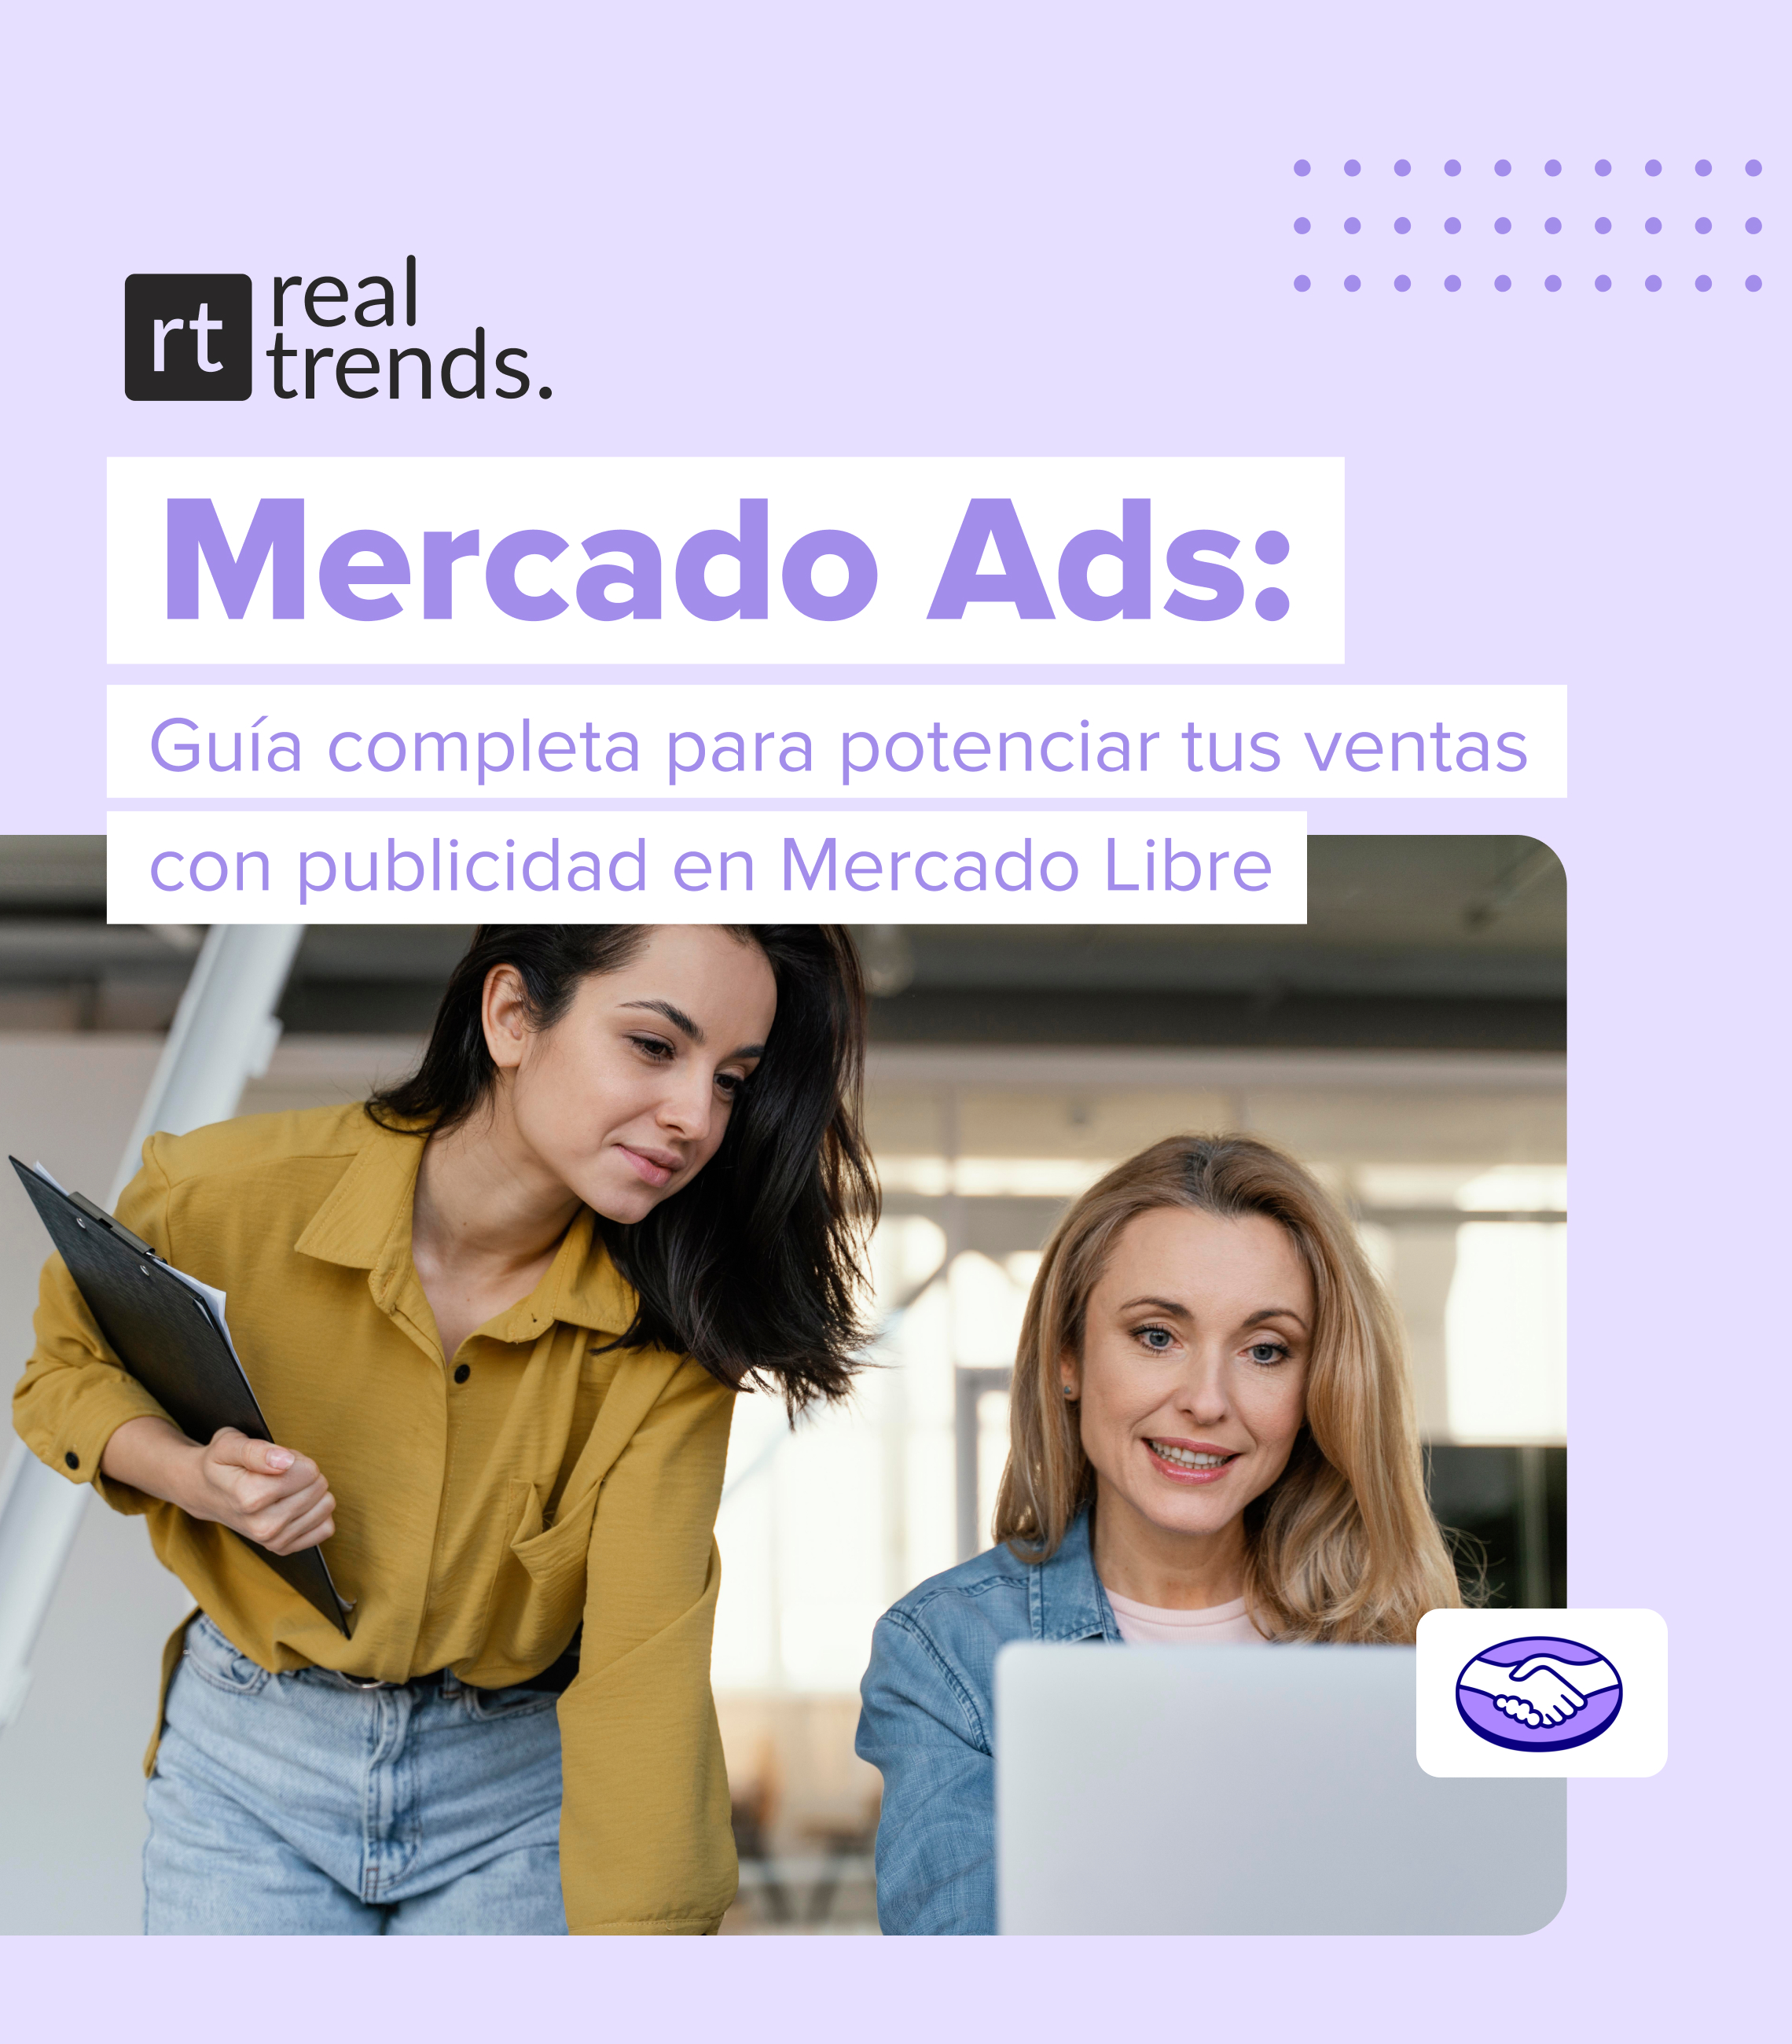 Imagen Mercado ads